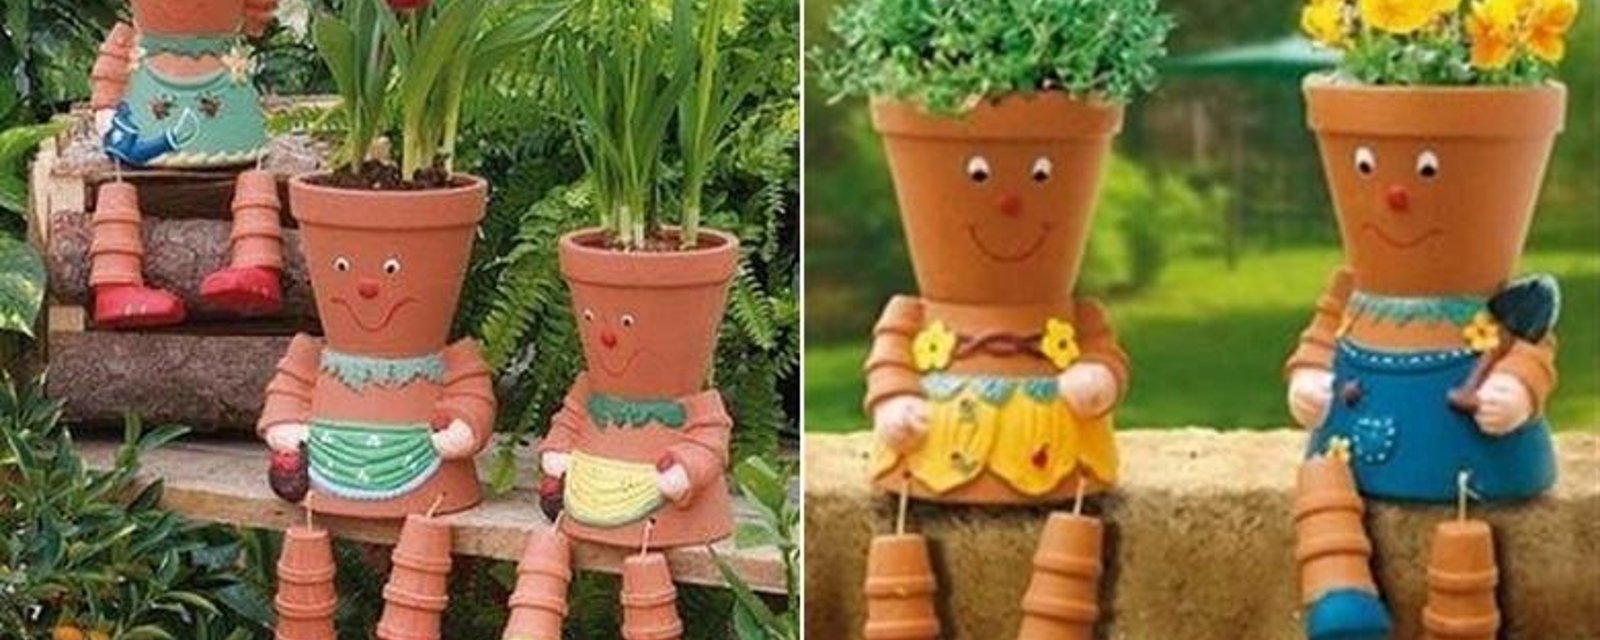 Fabriquer des personnages en pot de terre cuite!